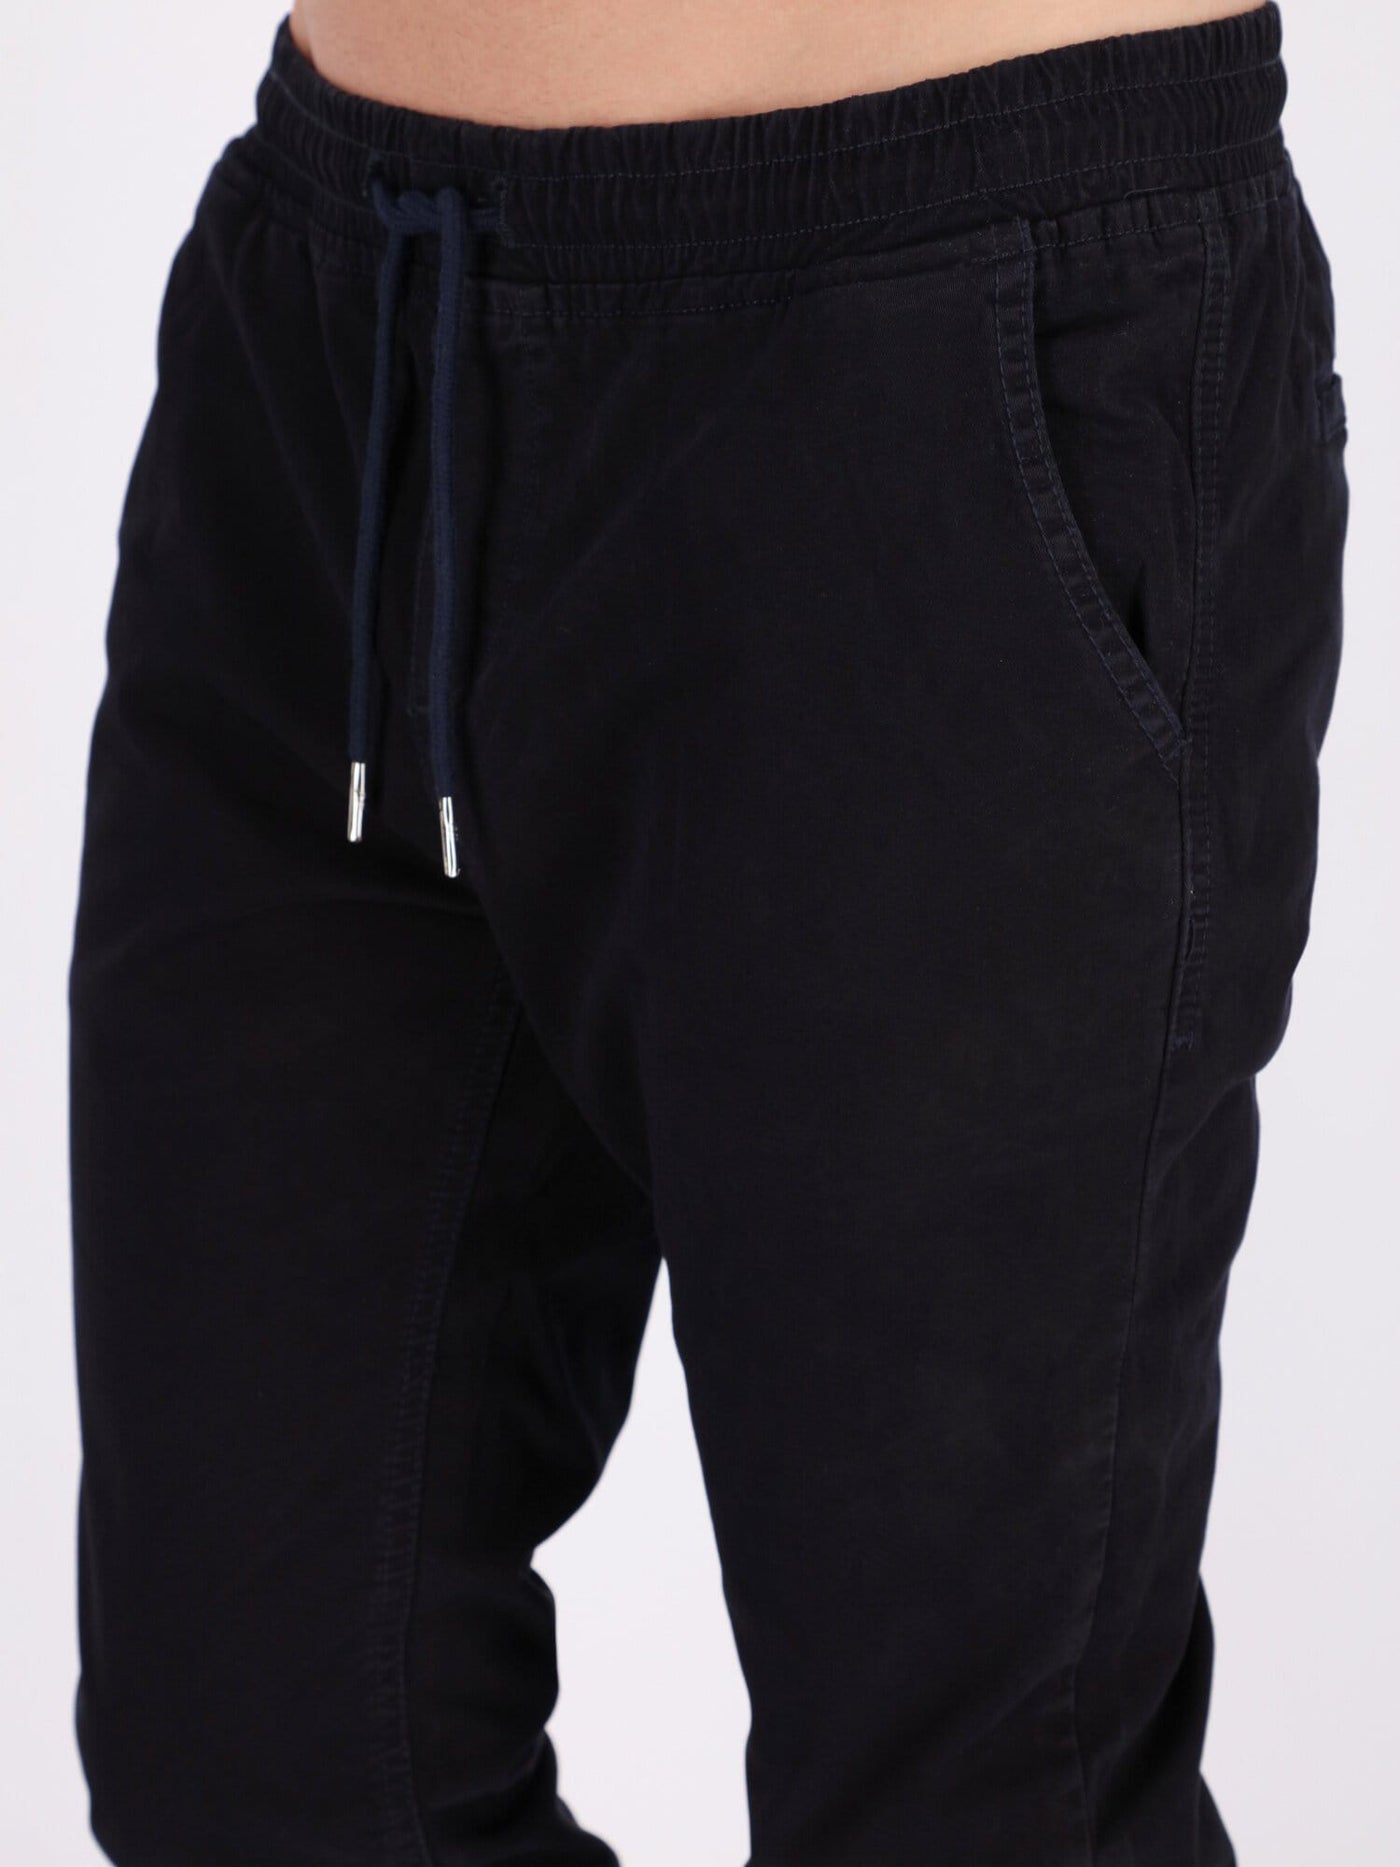 OR Pants & Shorts Navy / 30 Jogger Pants with Drawstring